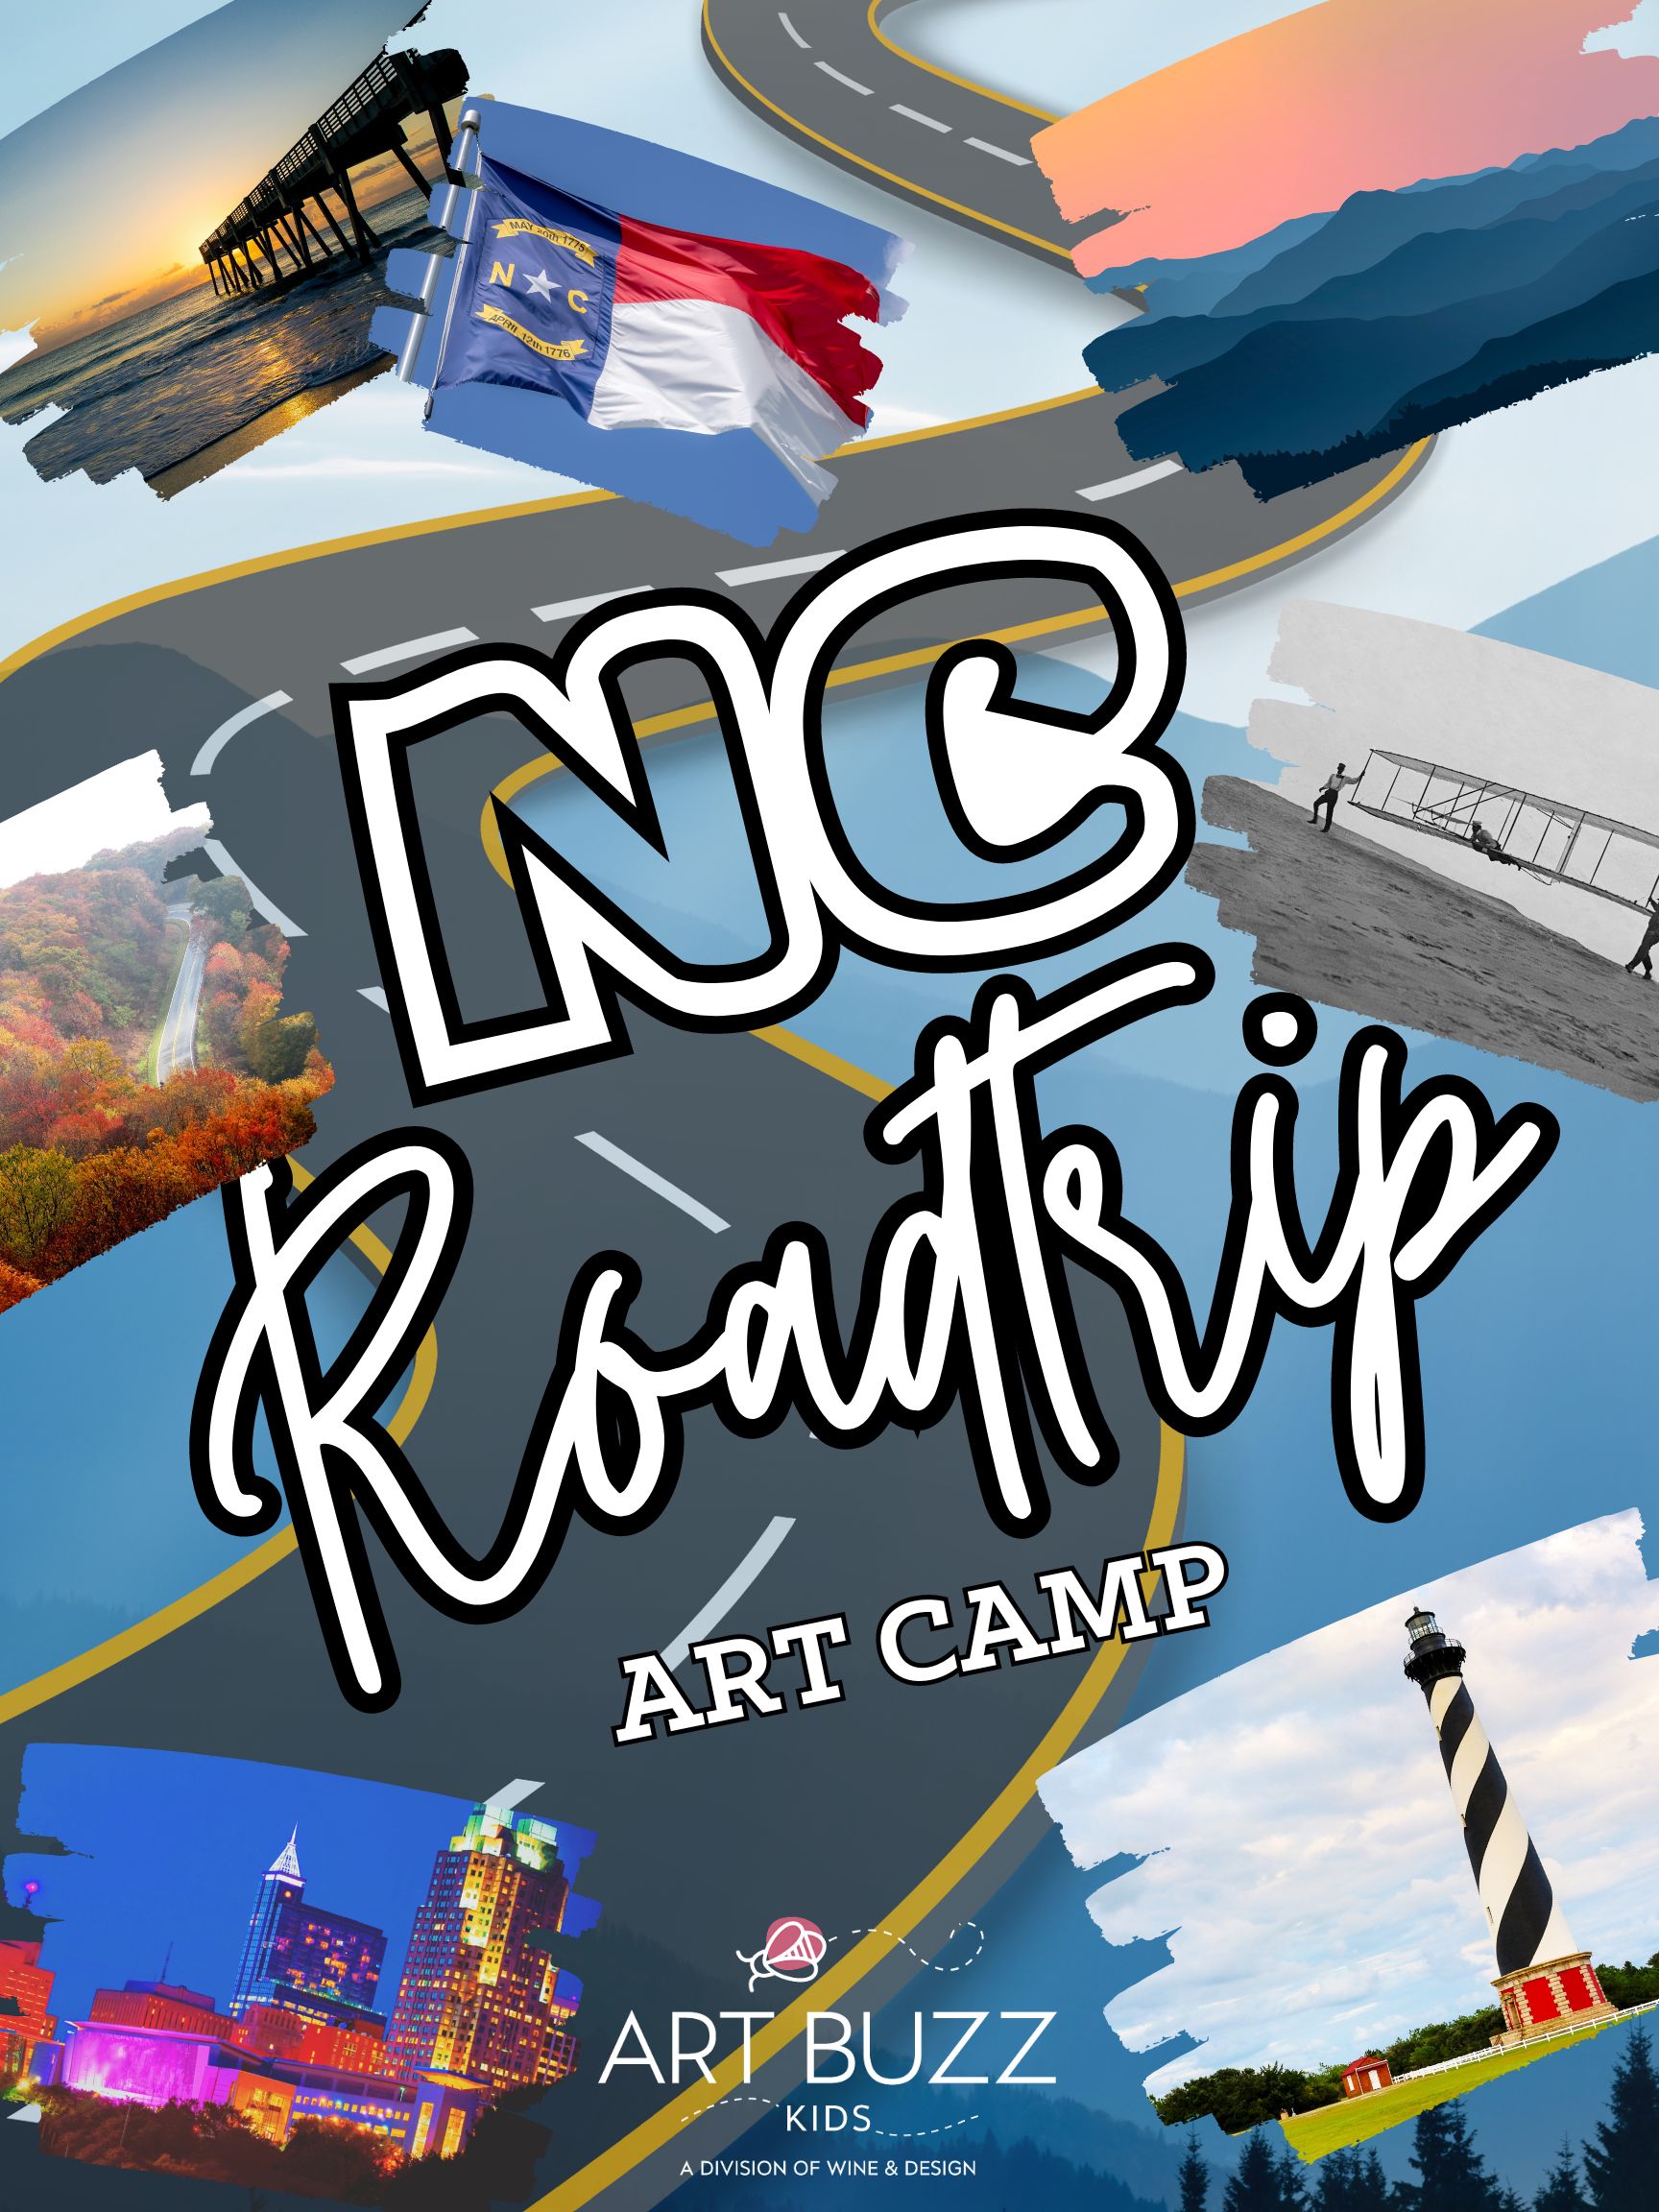 BRAND NEW: "NC Roadtrip!" Art Buzz Kids Art Camp! 10AM-2PM